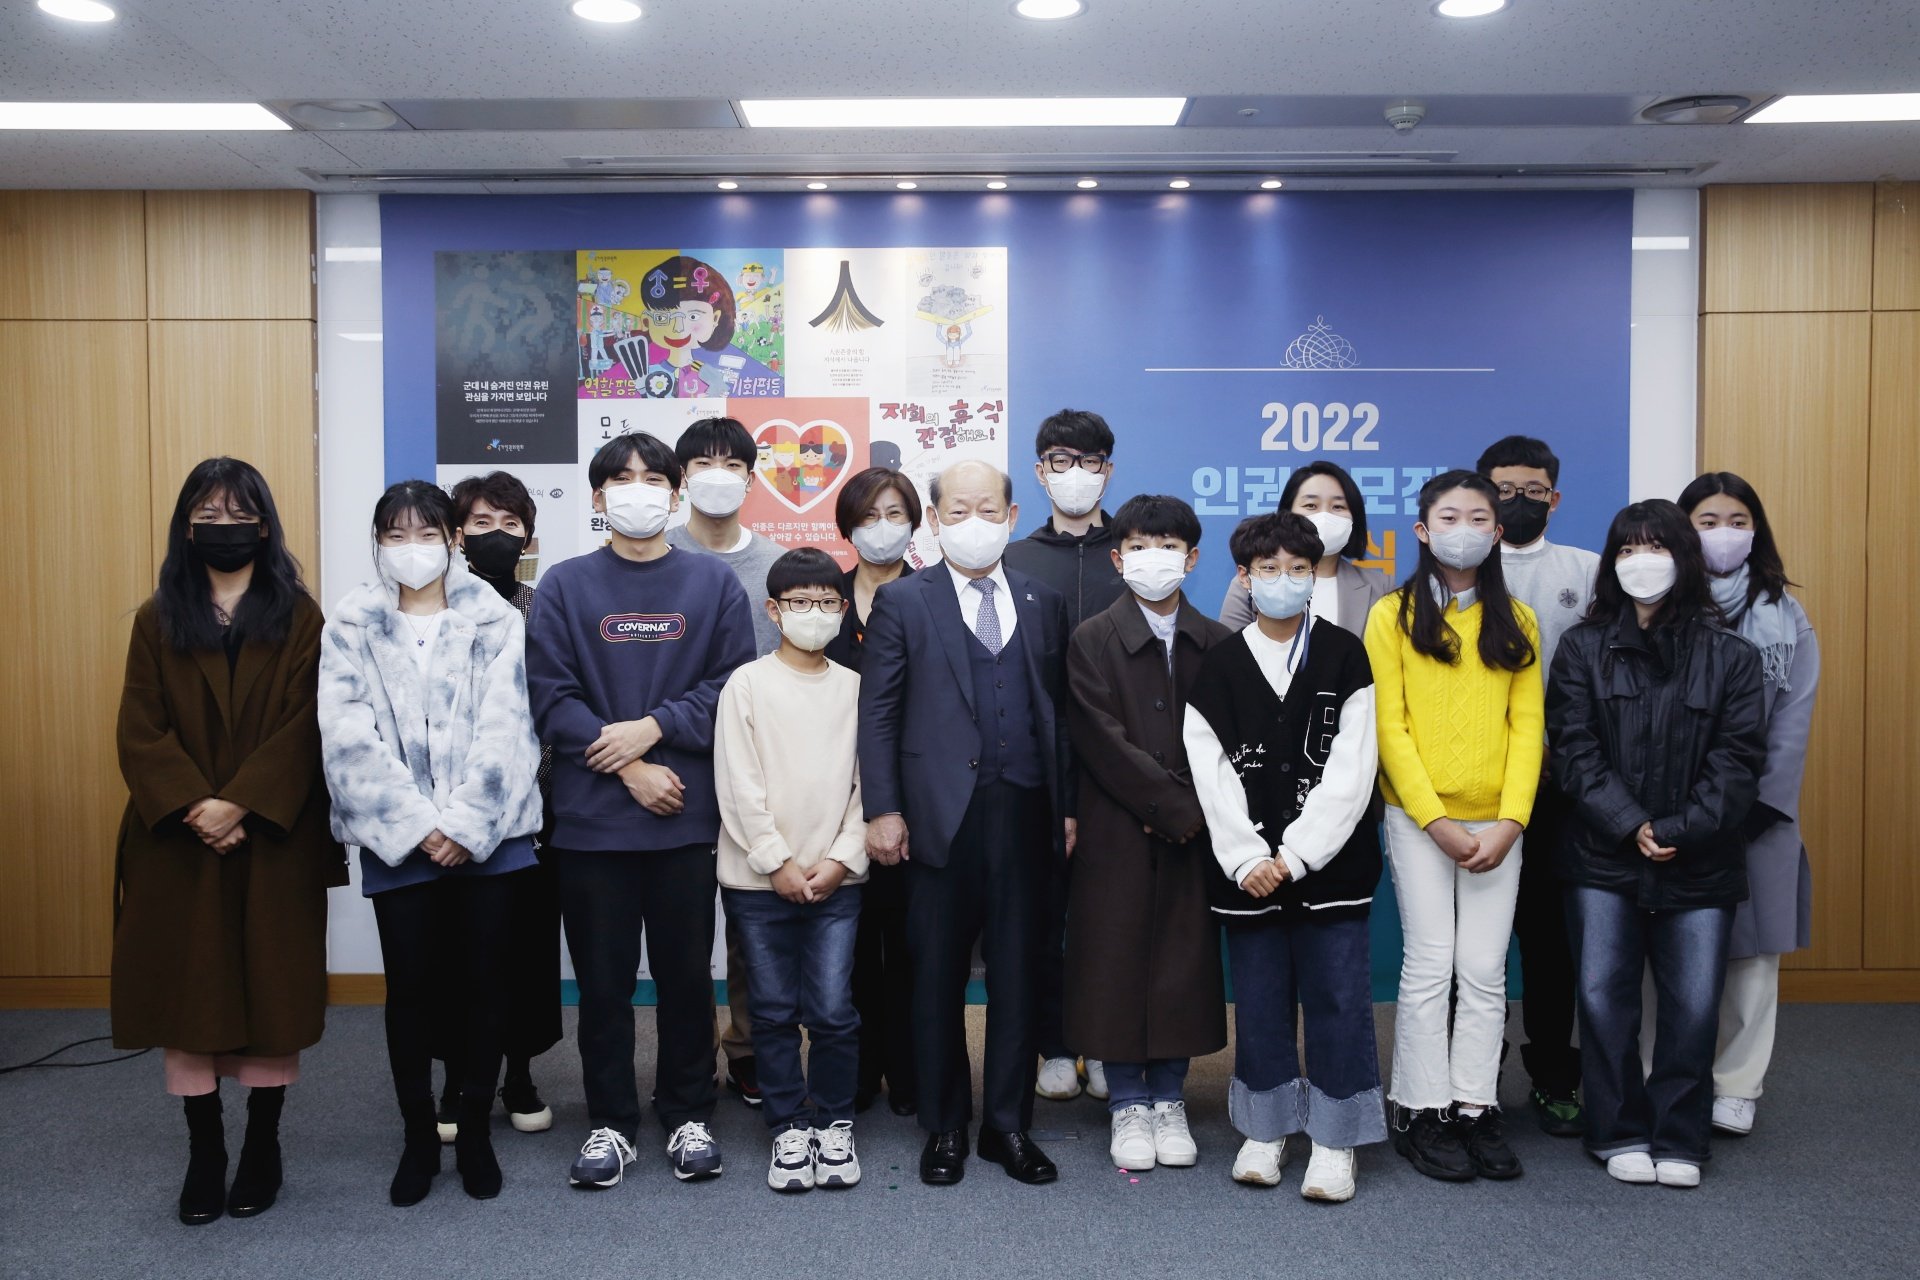  인권공모전 시상식에서 수상자들과 단체사진을 찍는 송두환 위원장